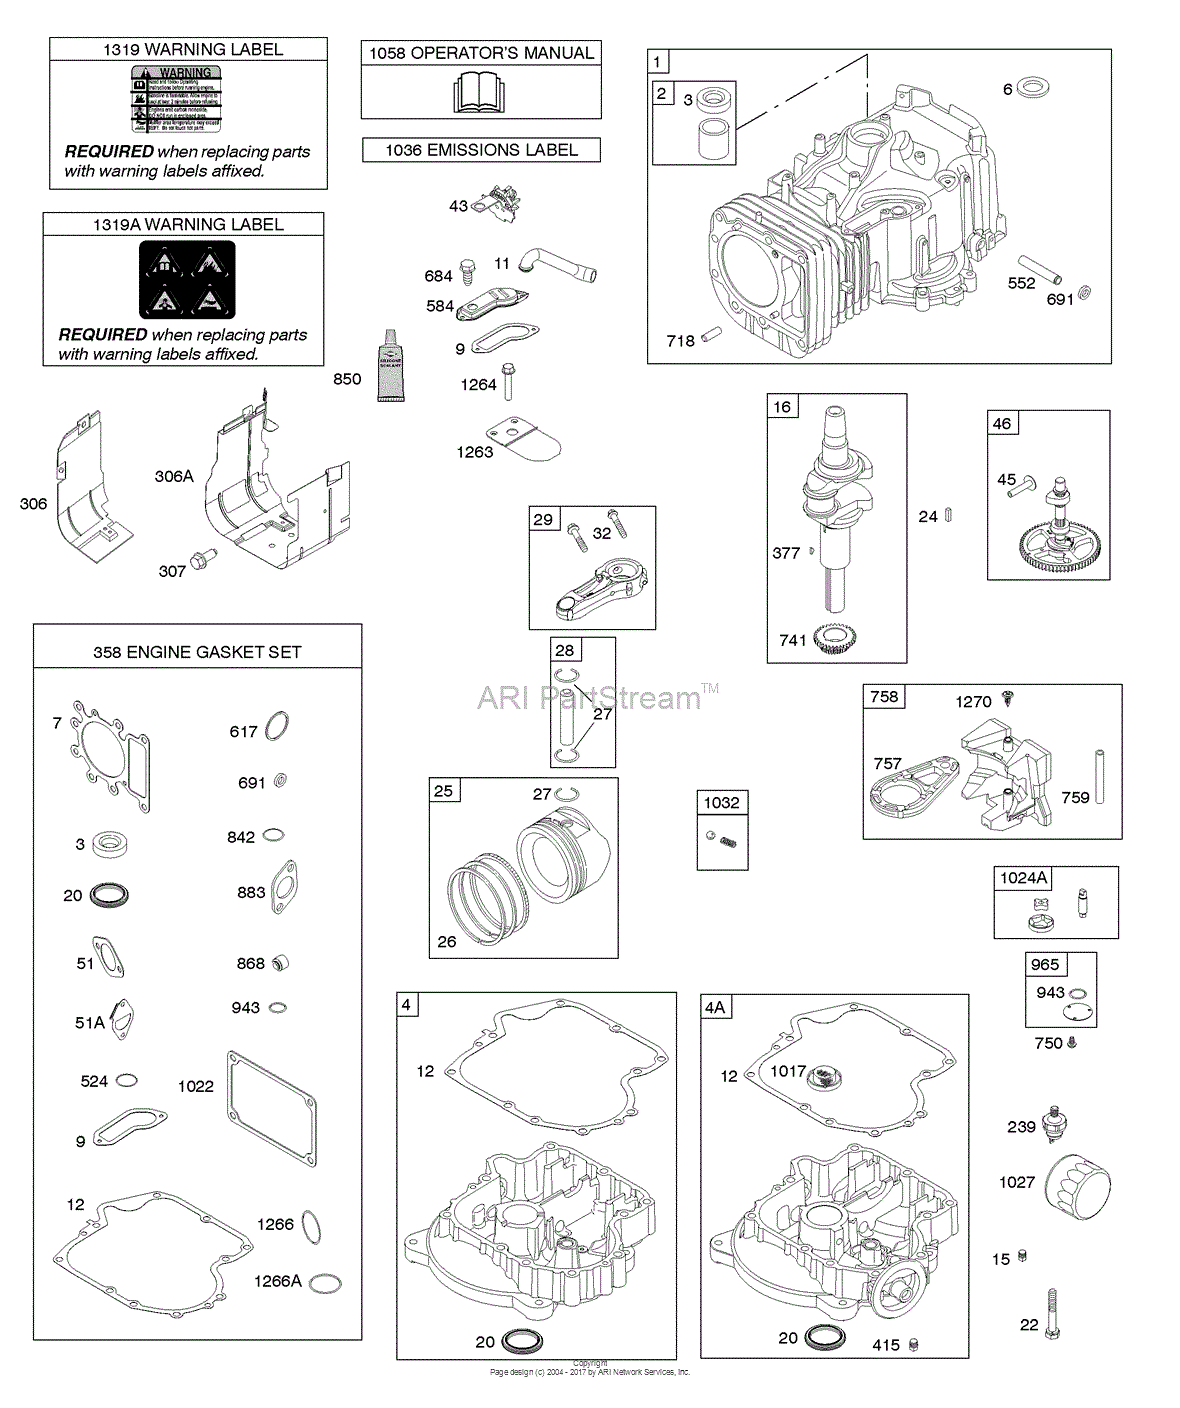 briggs and stratton 300e series parts manual